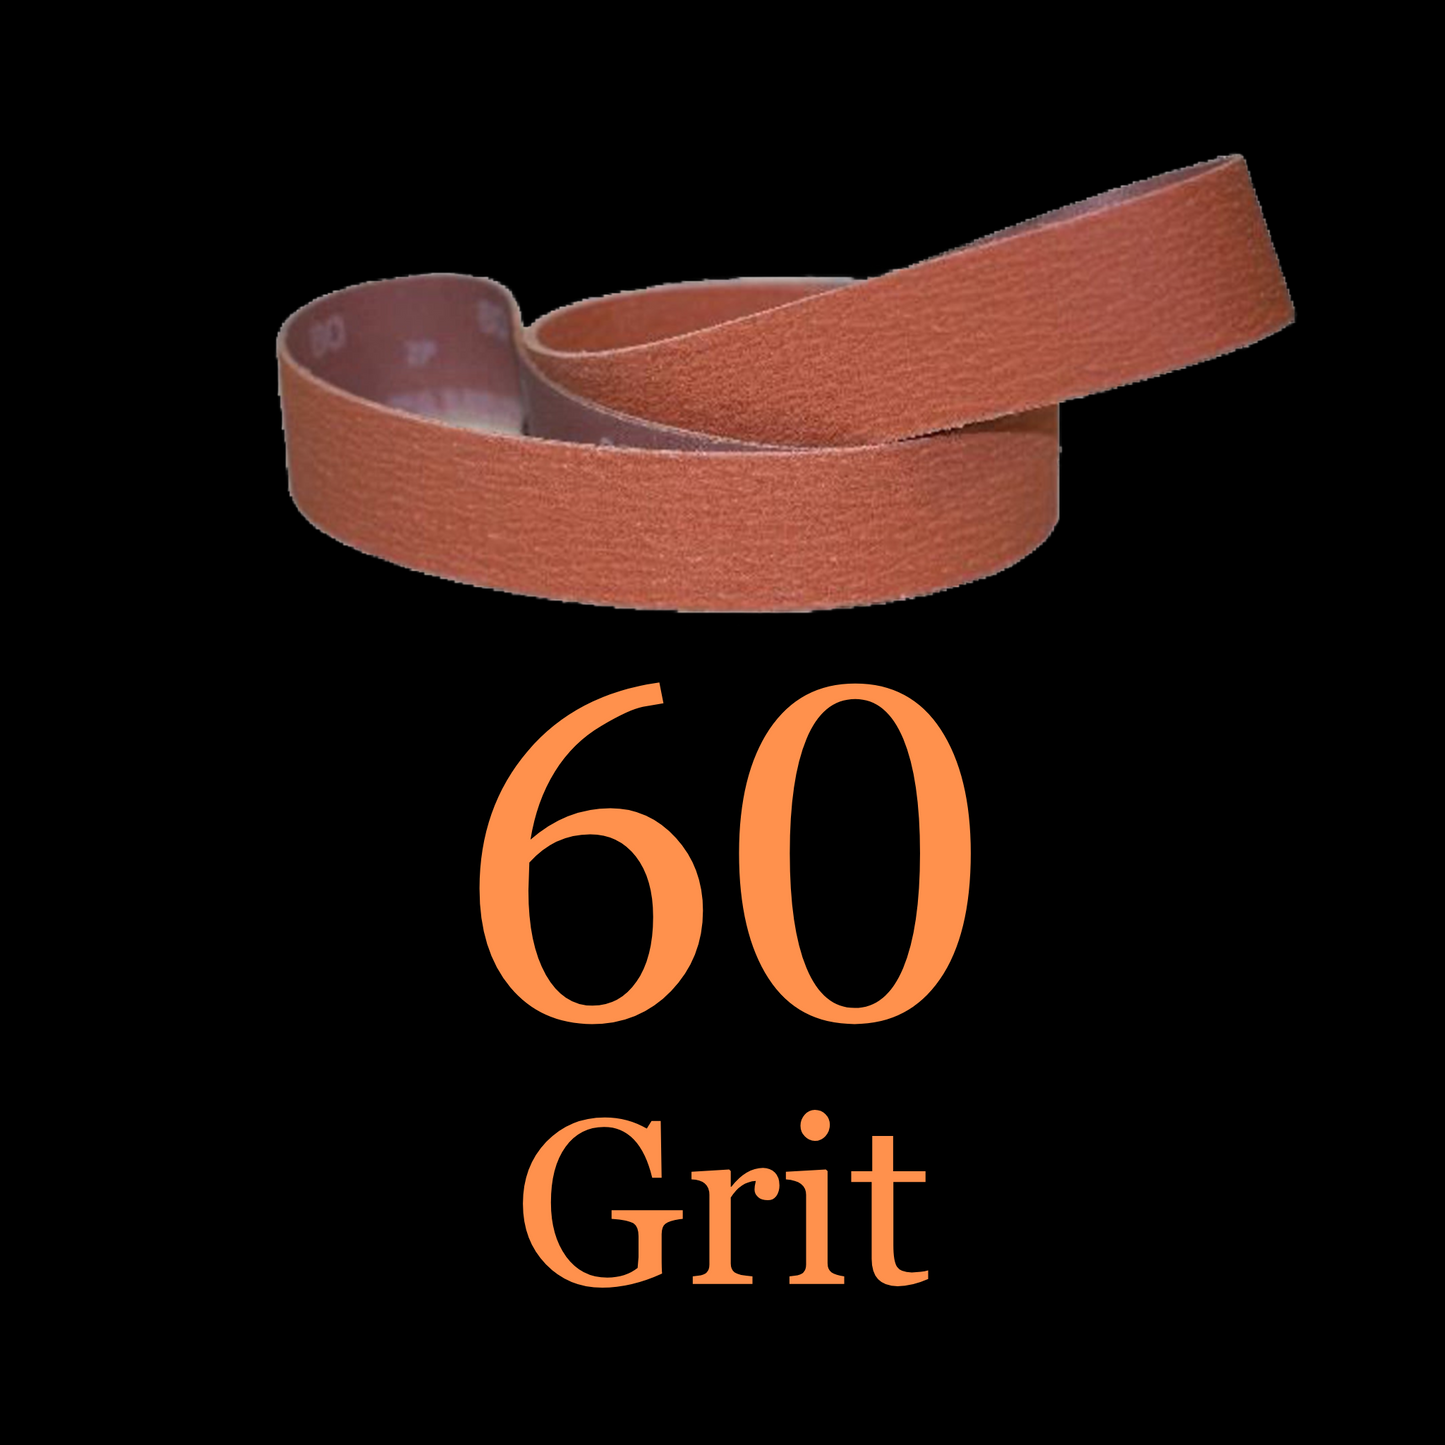 1” x 30” Ceramic Blaze Grinder Belt 60 Grit